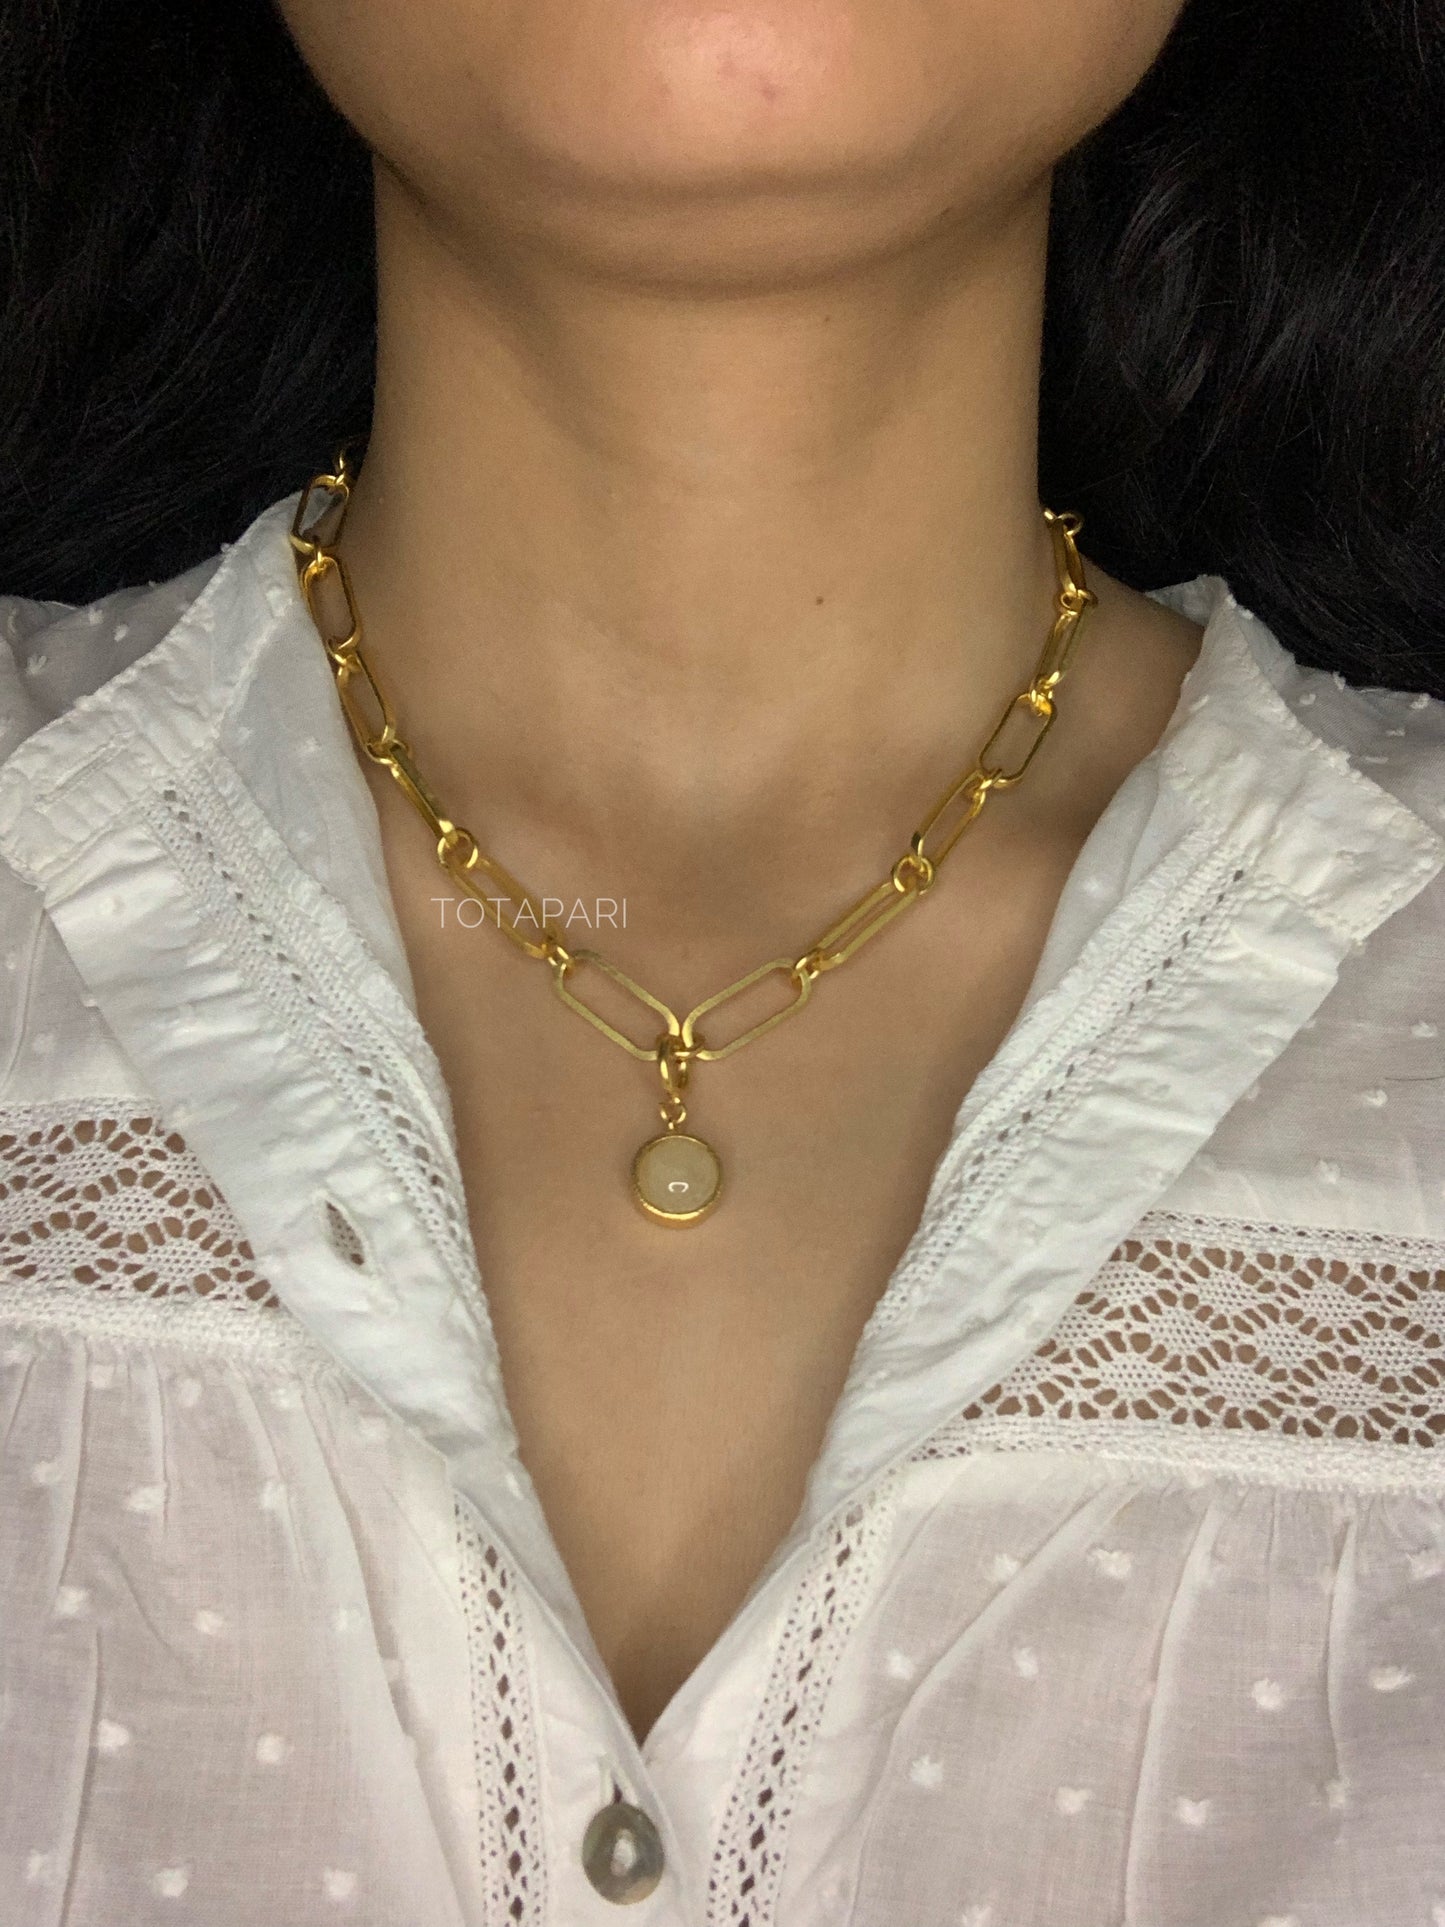 Manipura Chakra Linked Necklace